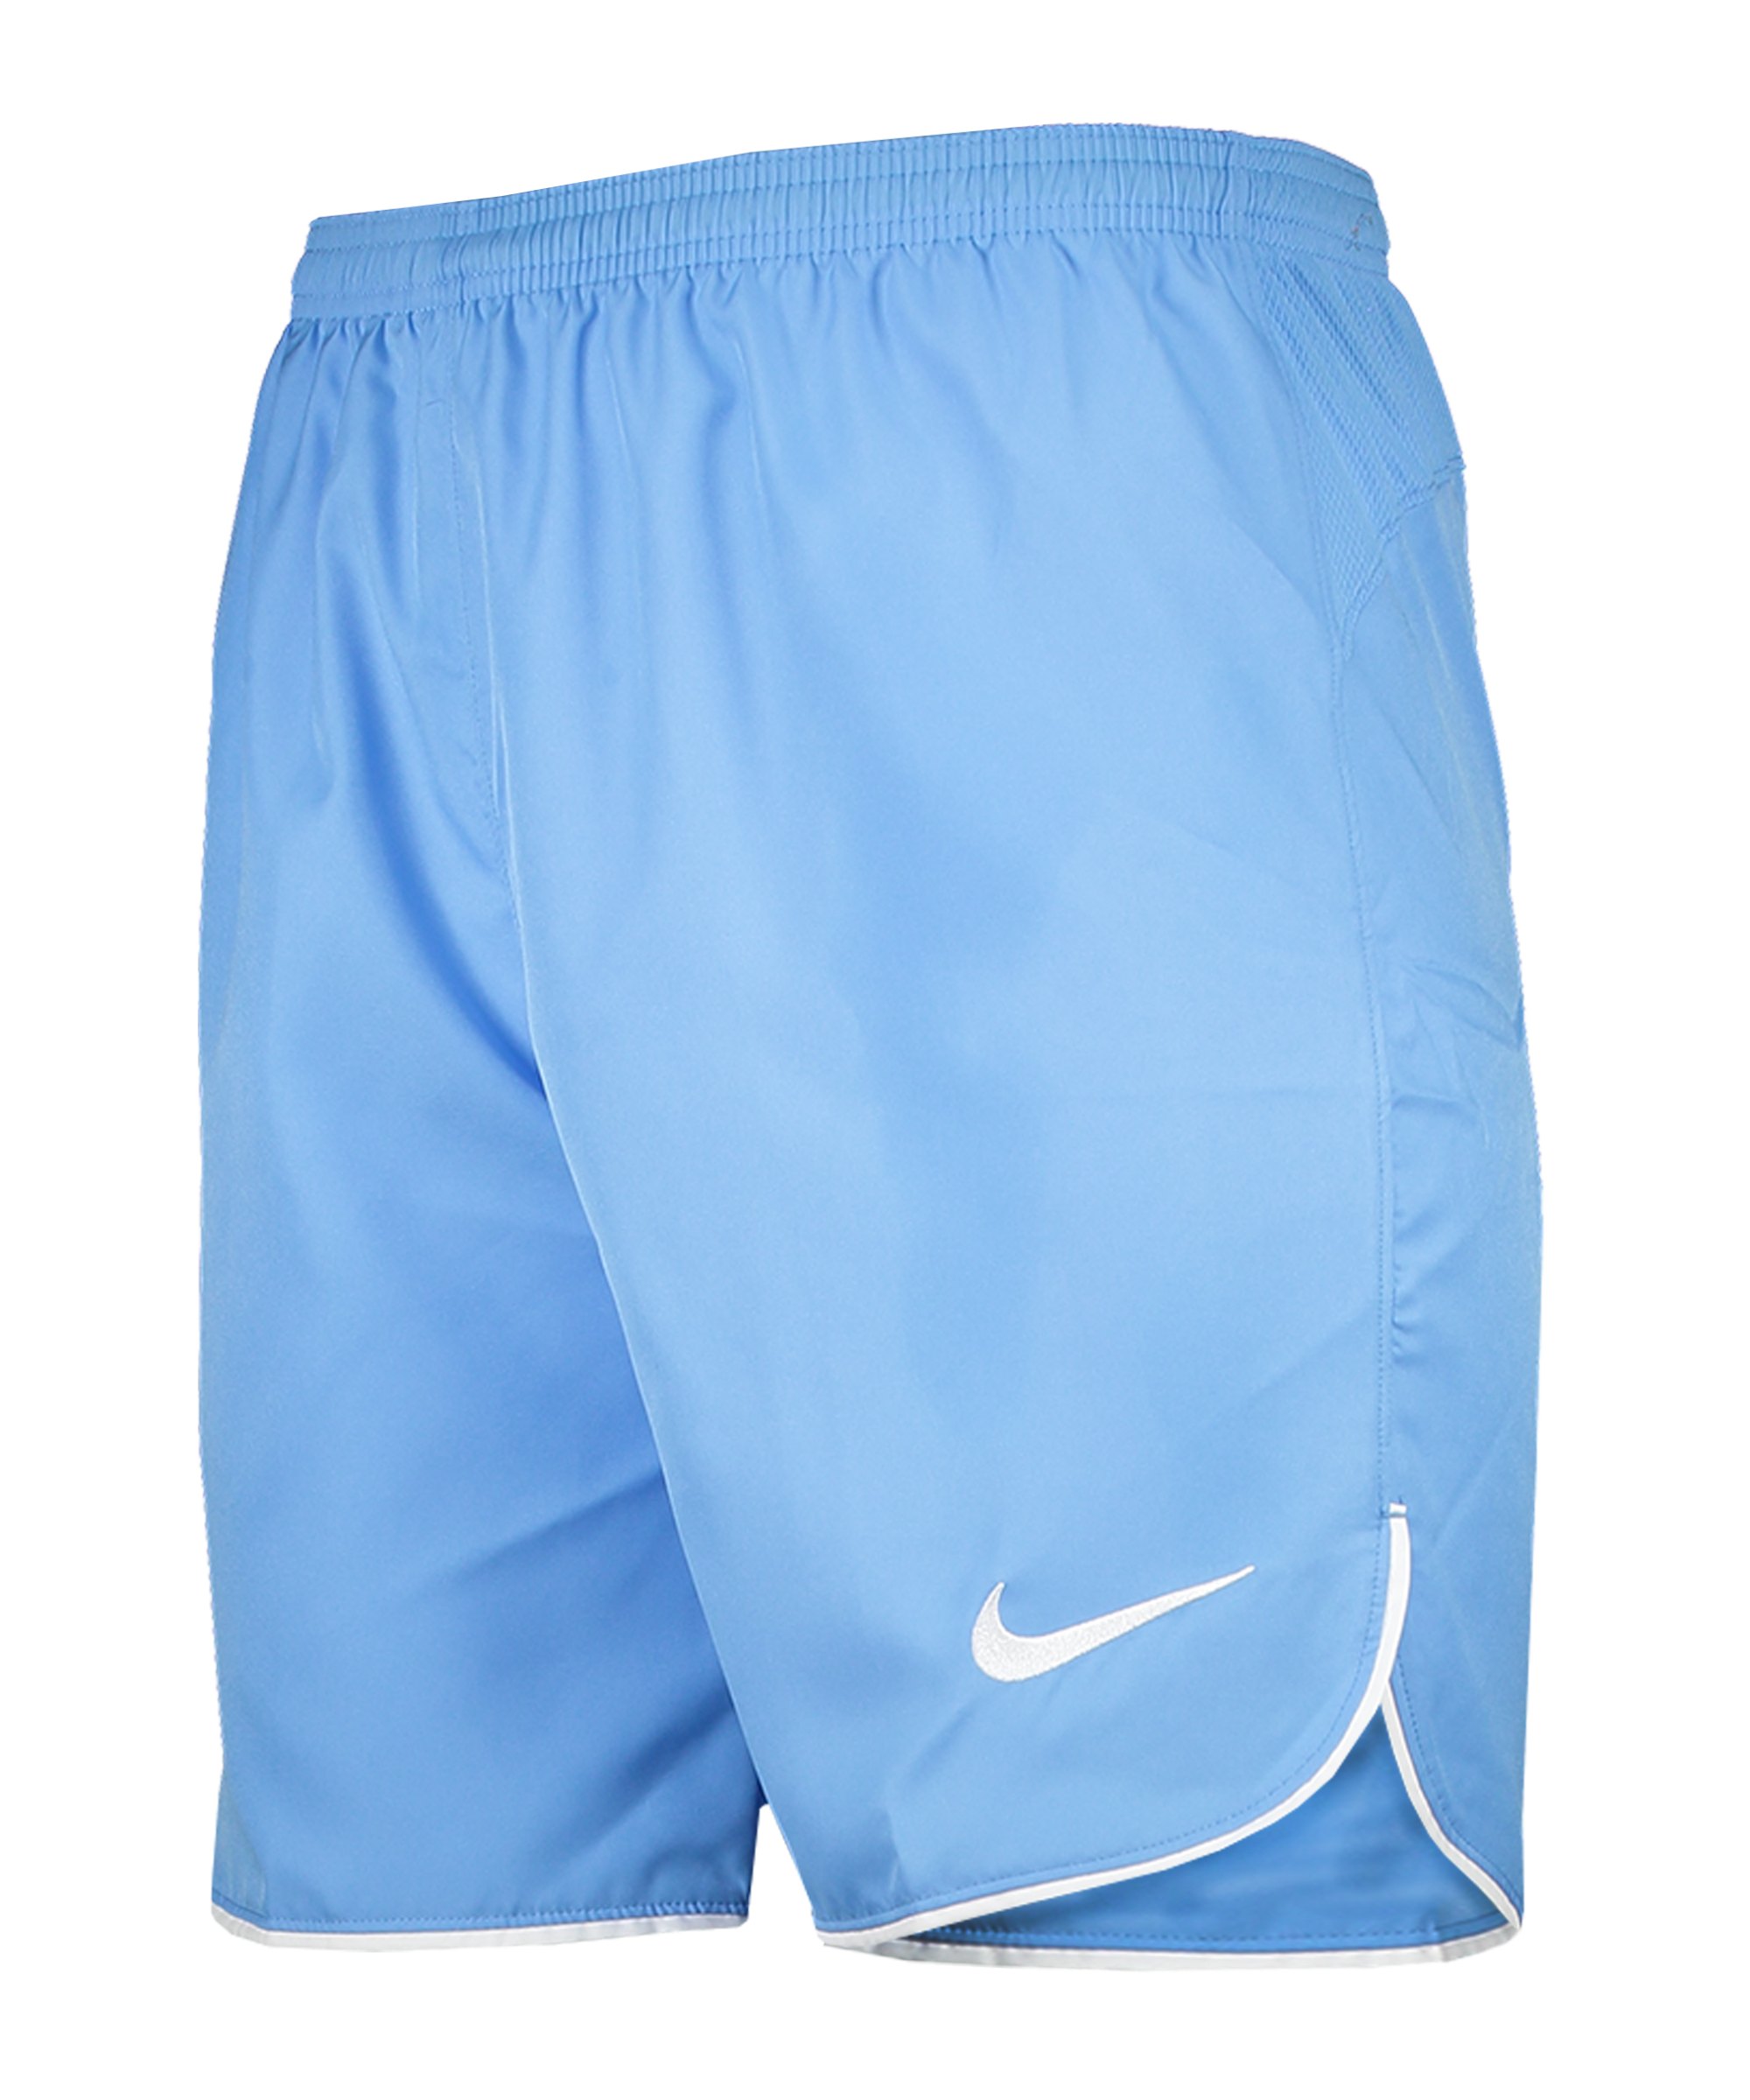 Nike Laser V Woven Short Blau Weiss F412 - blau